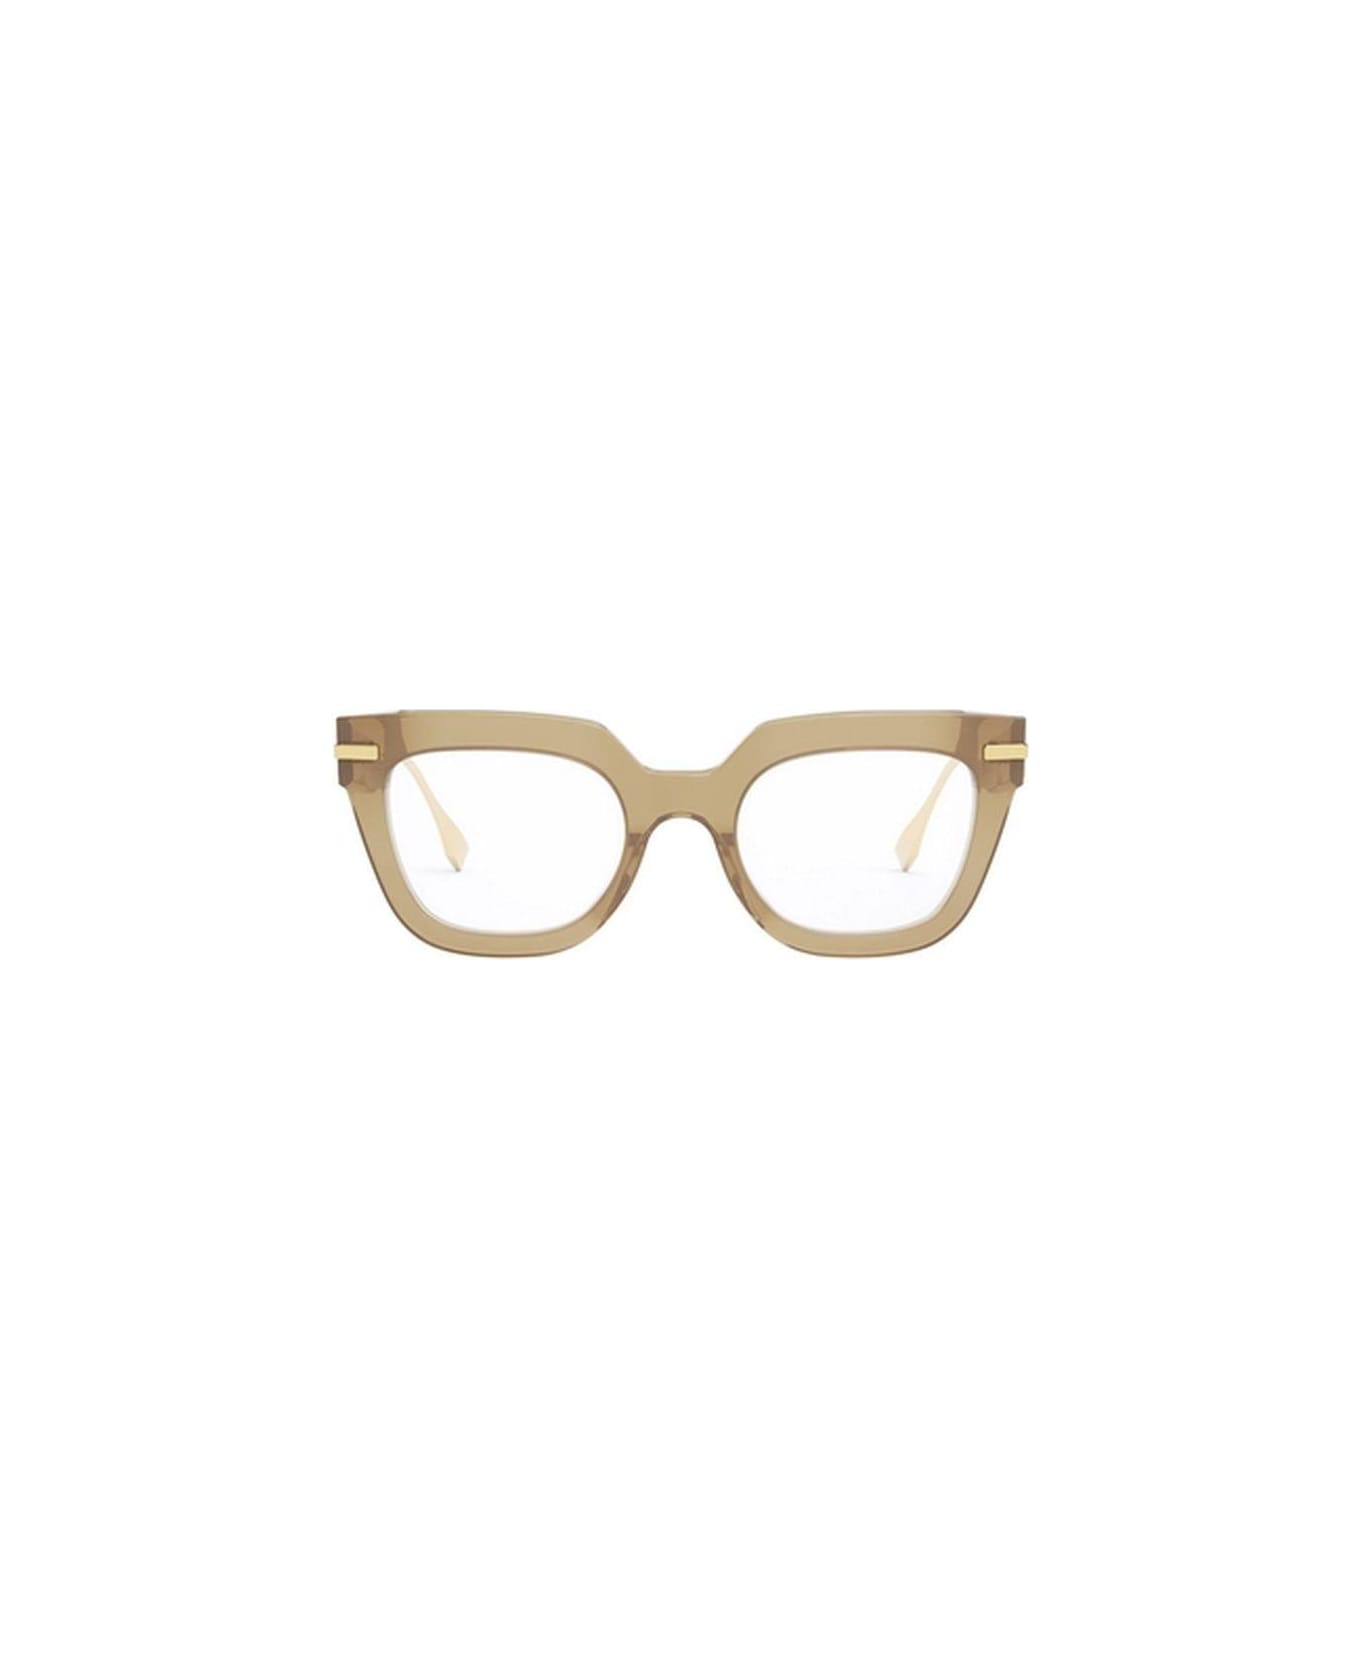 Fendi Eyewear Square Frame Glasses - 057 アイウェア